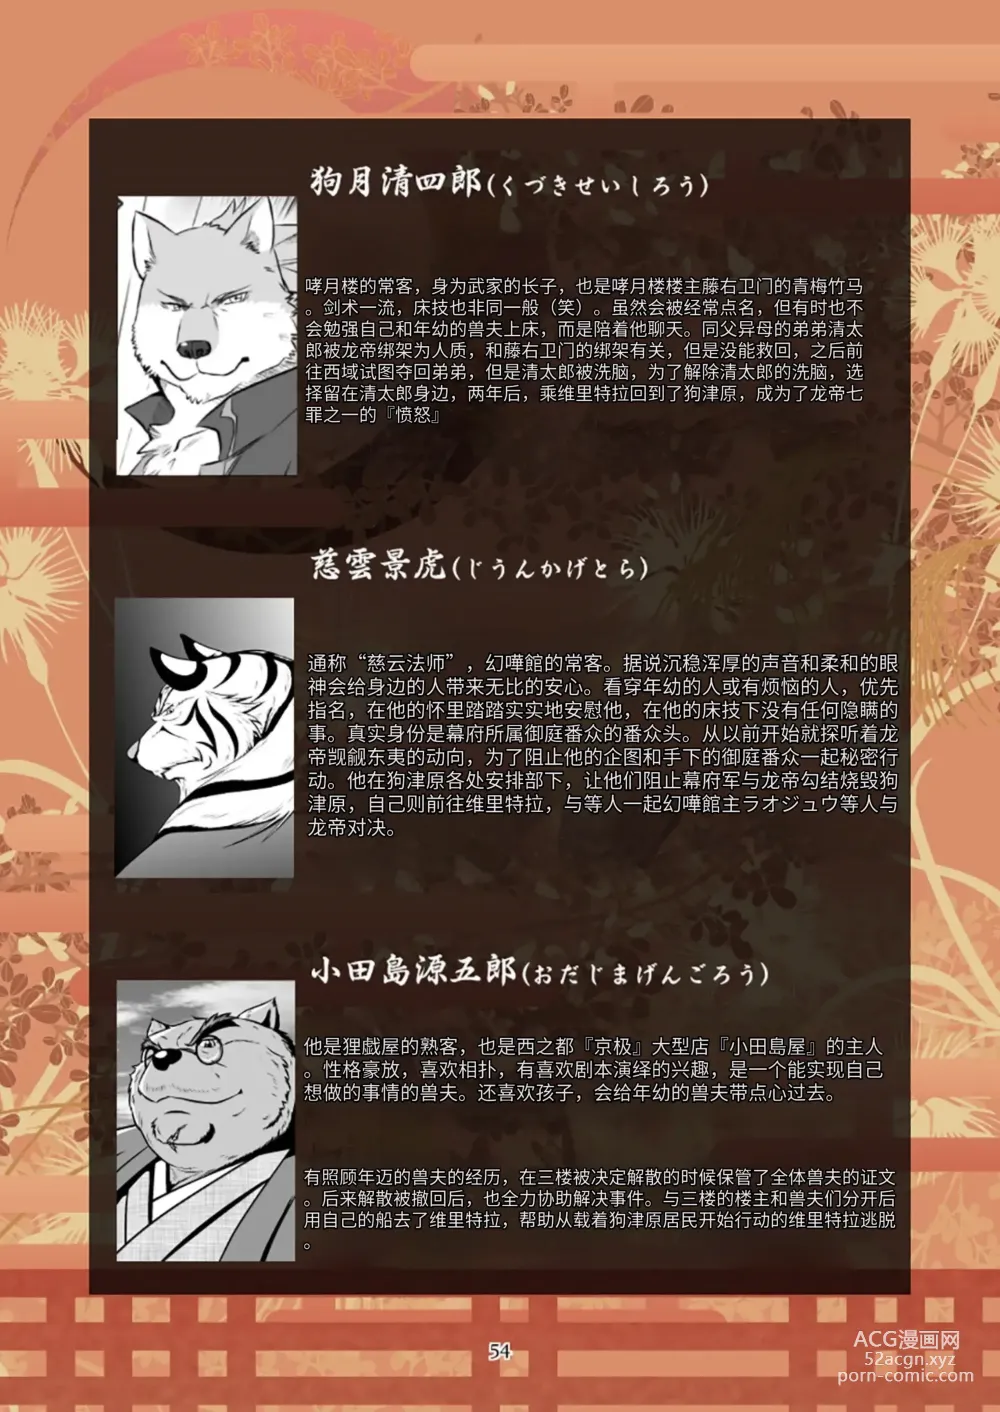 Page 54 of doujinshi 狗津原细见